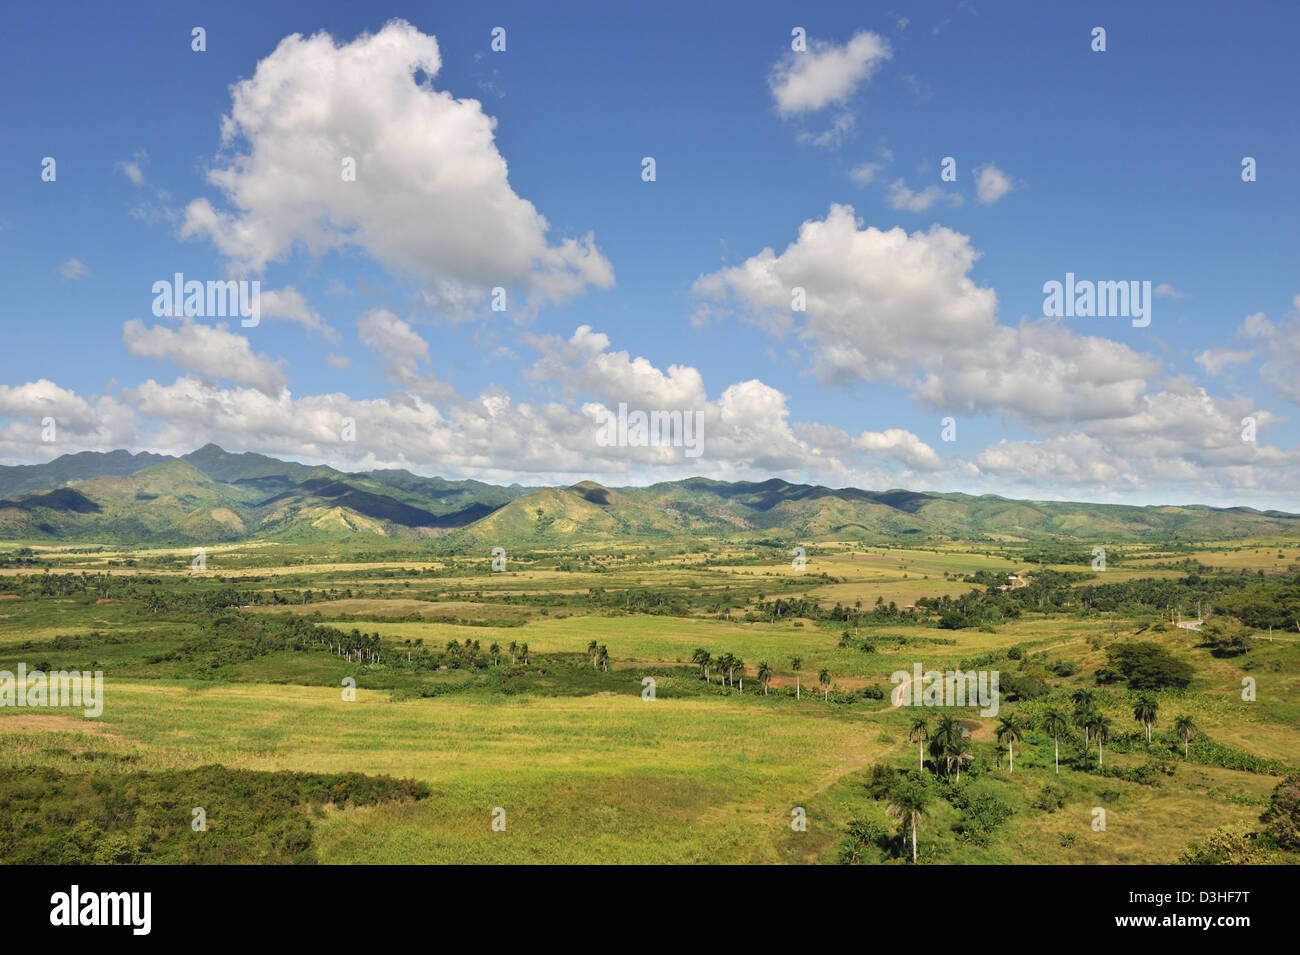 Mirador de La Loma del Puerto viewpoint with a view over the Sugar Mills Valley near Trinidad, Cuba Stock Photo